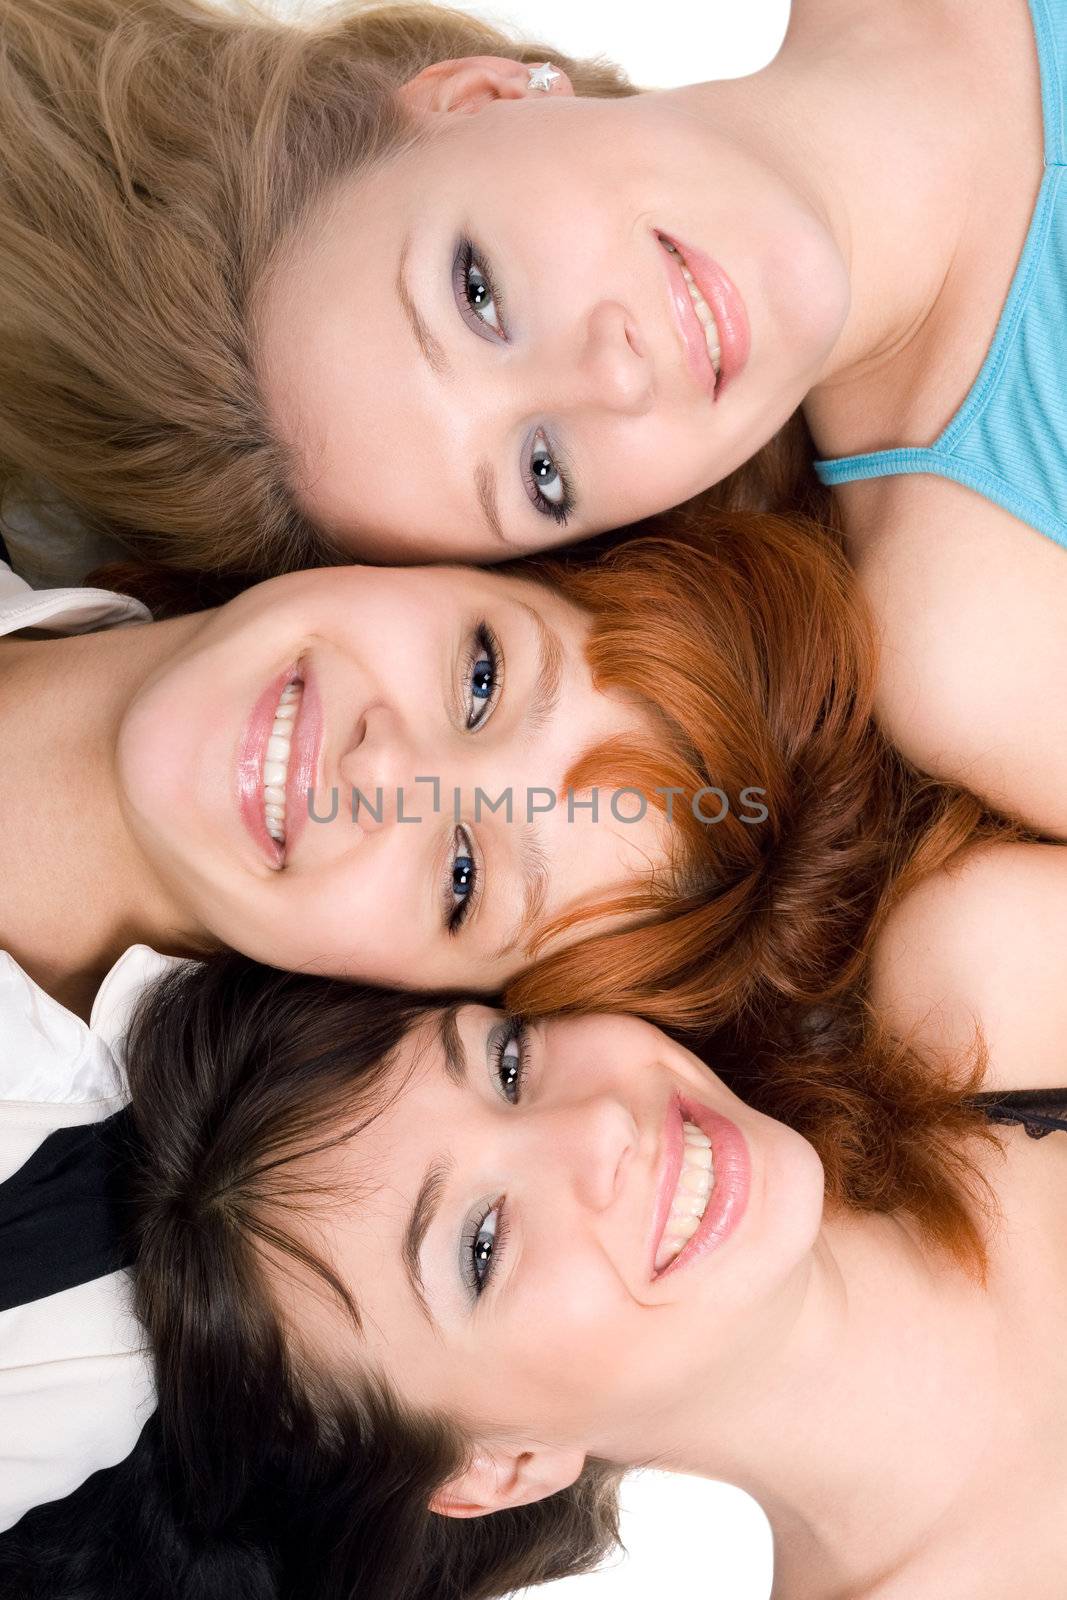 Three cheerful women by acidgrey